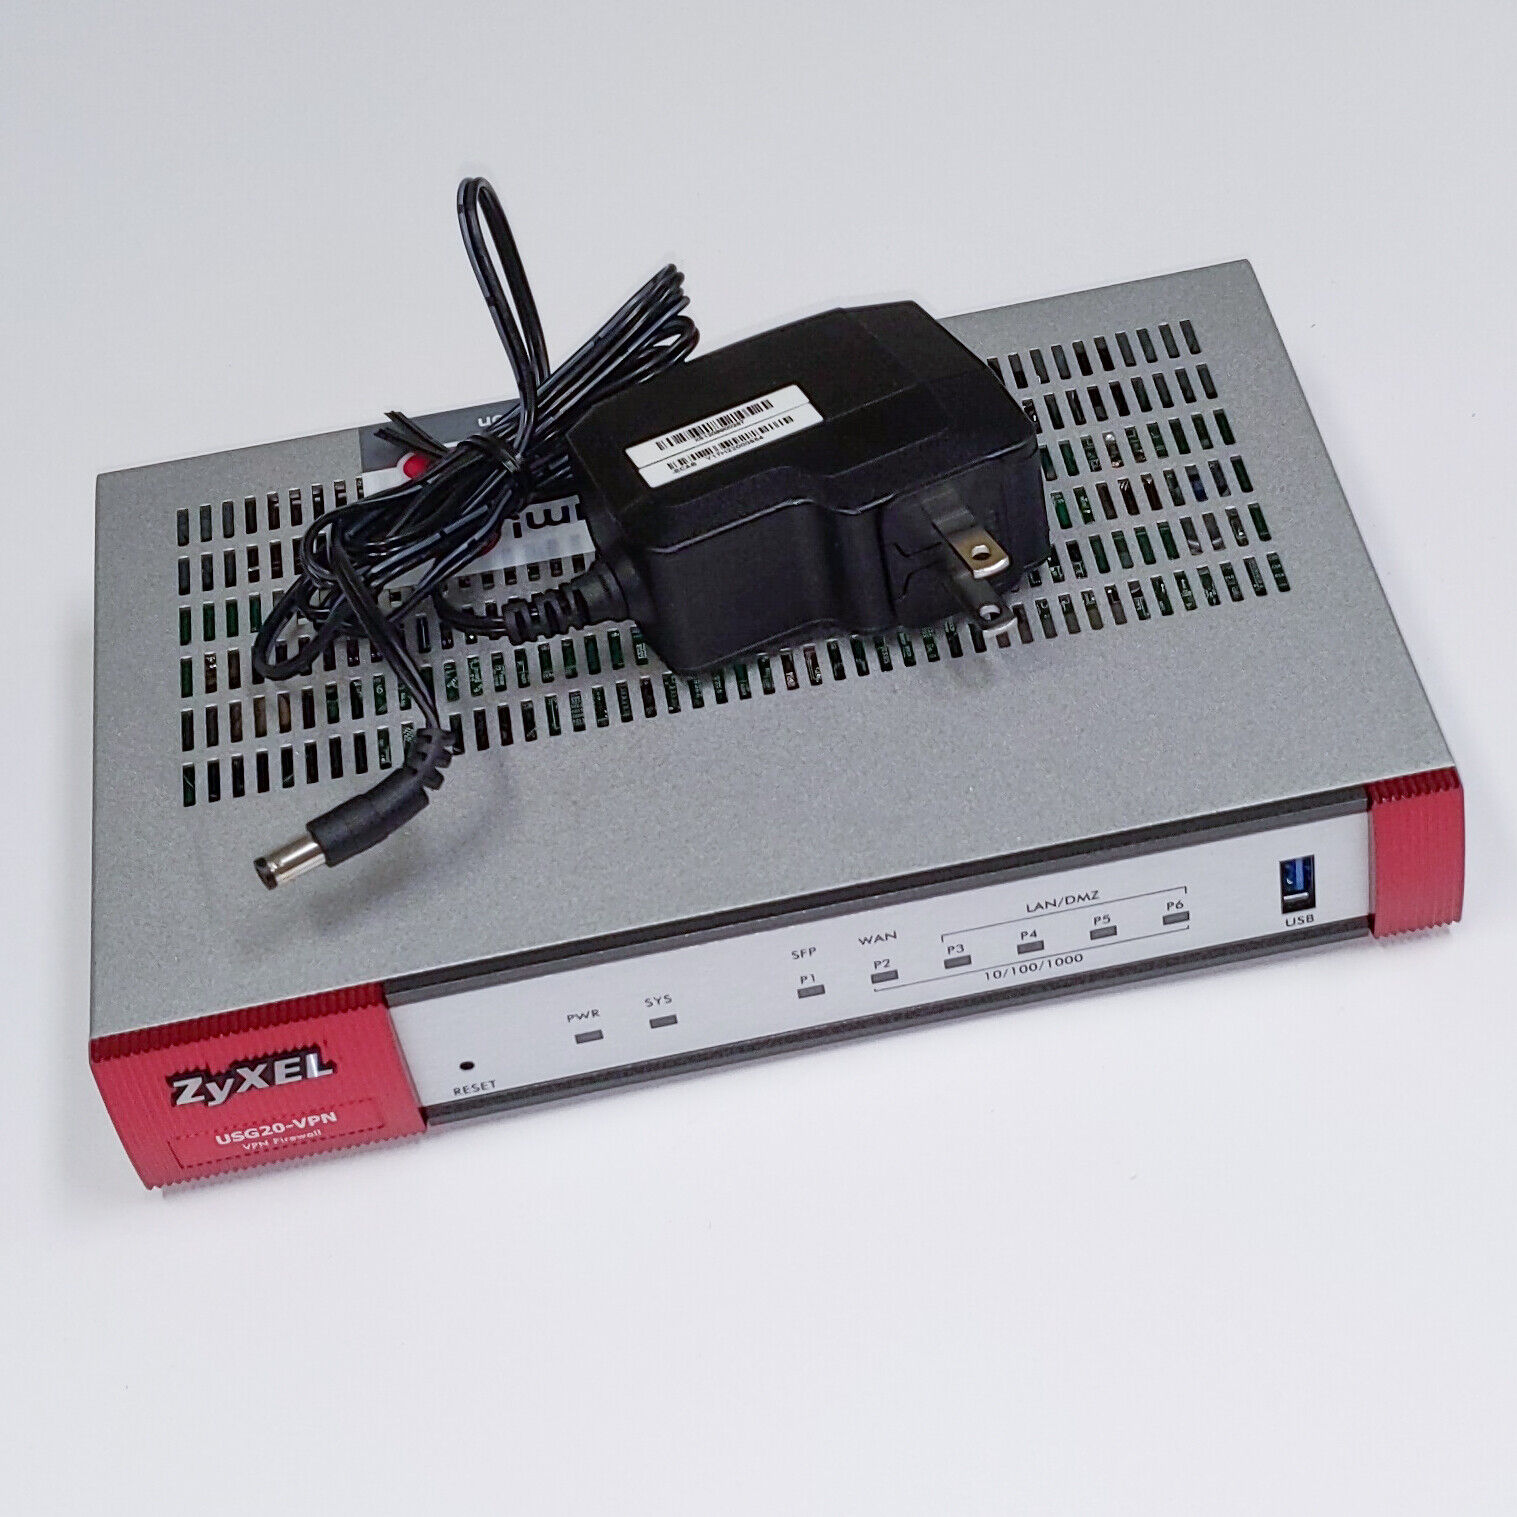 ZyXEL Next Generation VPN Firewall 1 WAN,1 SFP, 4 LAN/DMZ Gigabit USG20-VPN